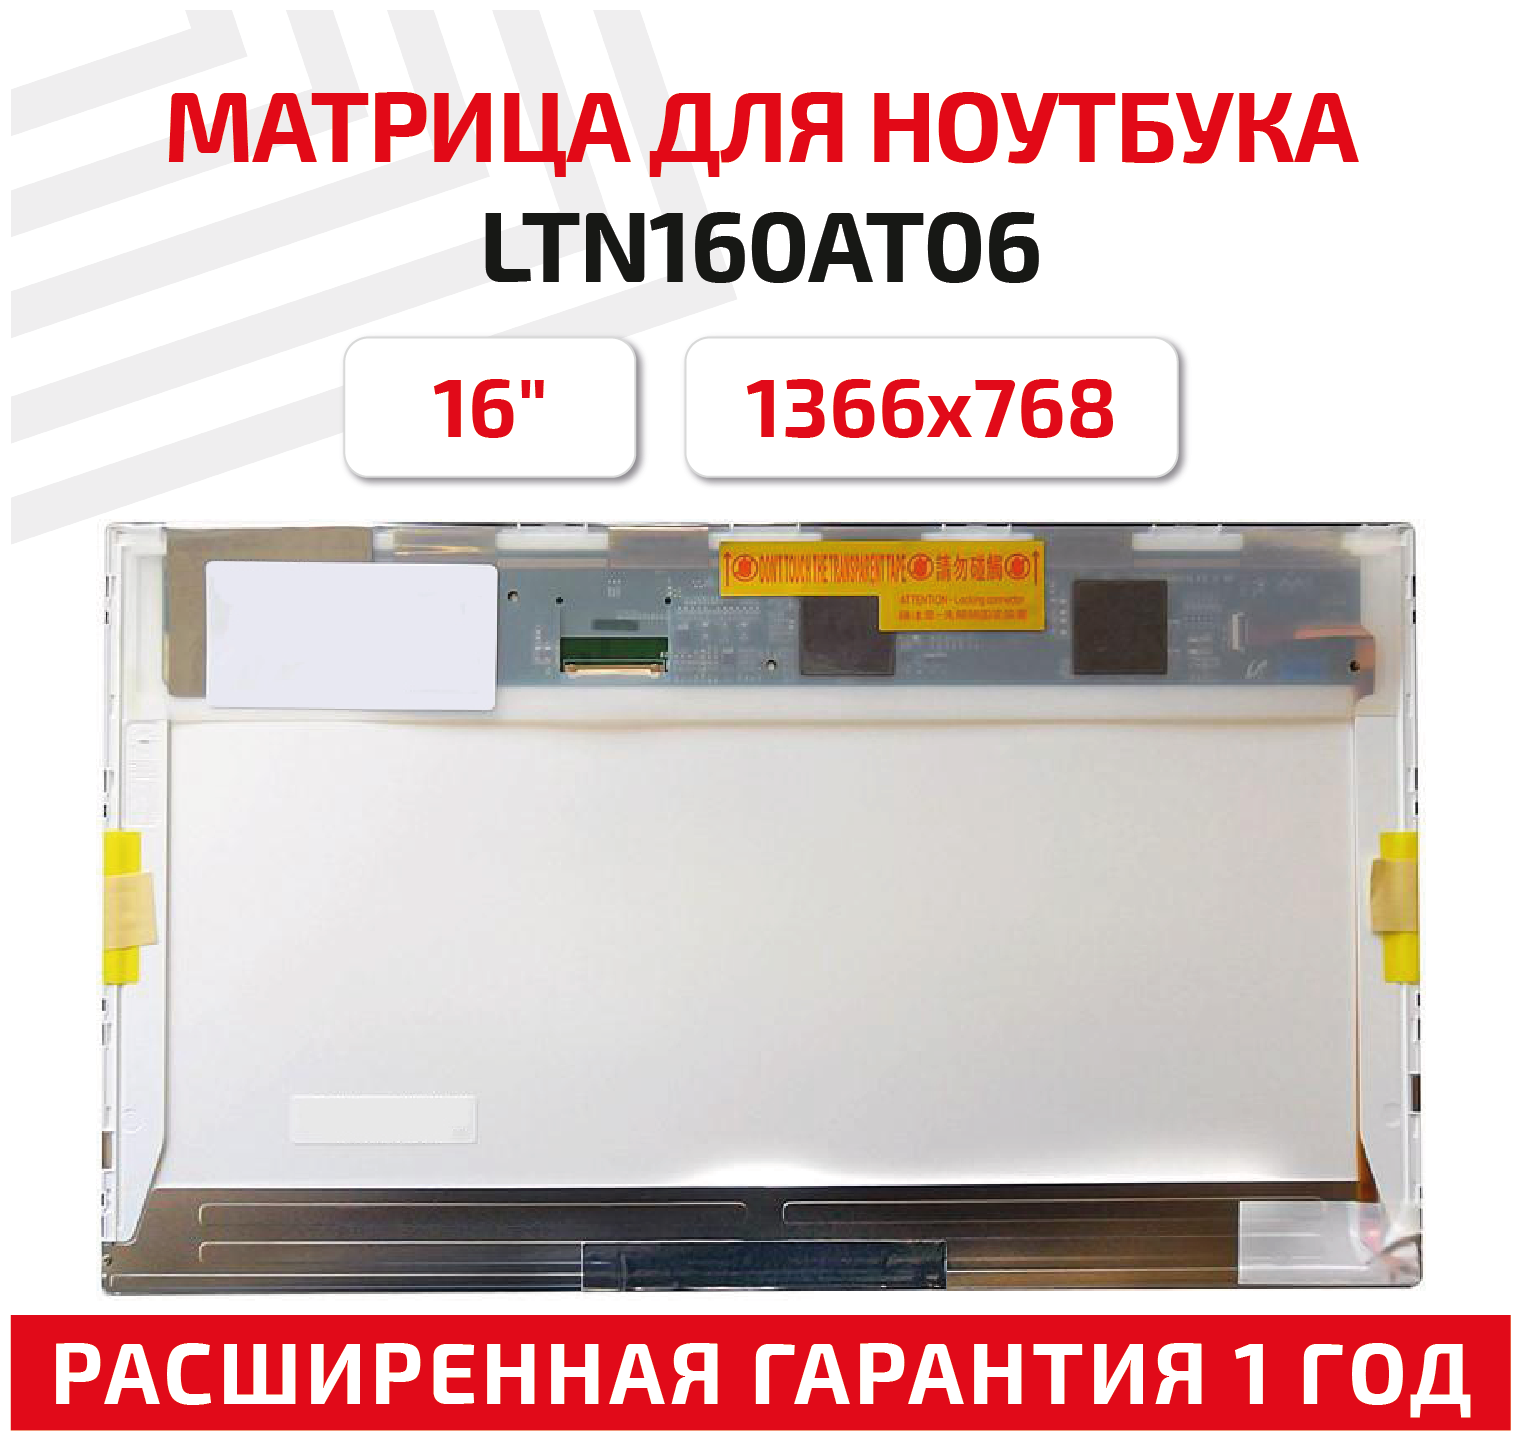 Матрица (экран) для ноутбука LTN160AT06, 16", 1366x768, Normal (стандарт), 40-pin, светодиодная (LED), глянцевая